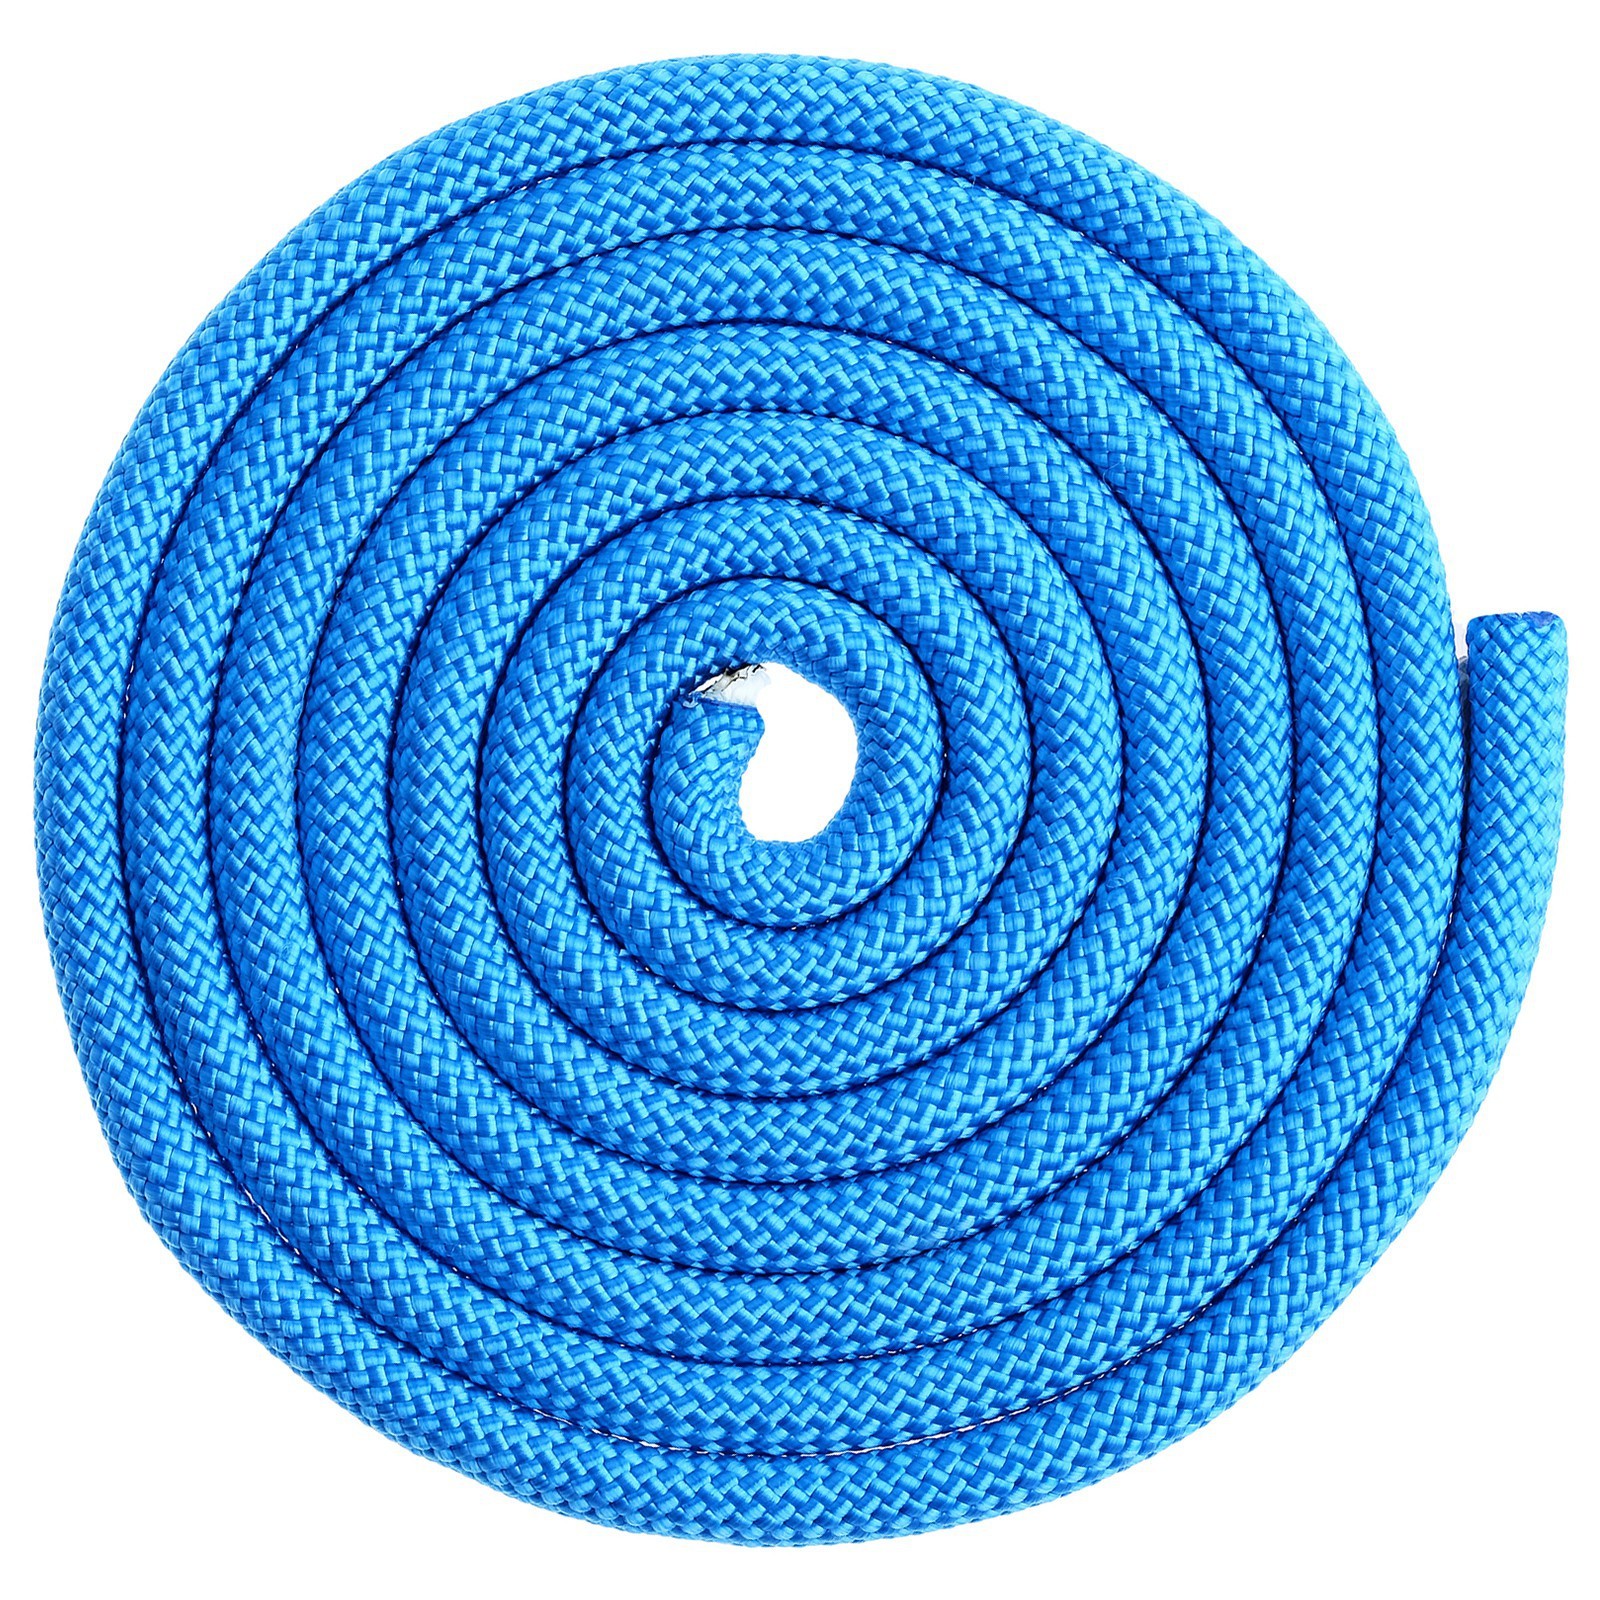 Скакалка гимнастическая утяжелённая Grace Dance, 2,5 м, 150 г, цвет синий 4446795